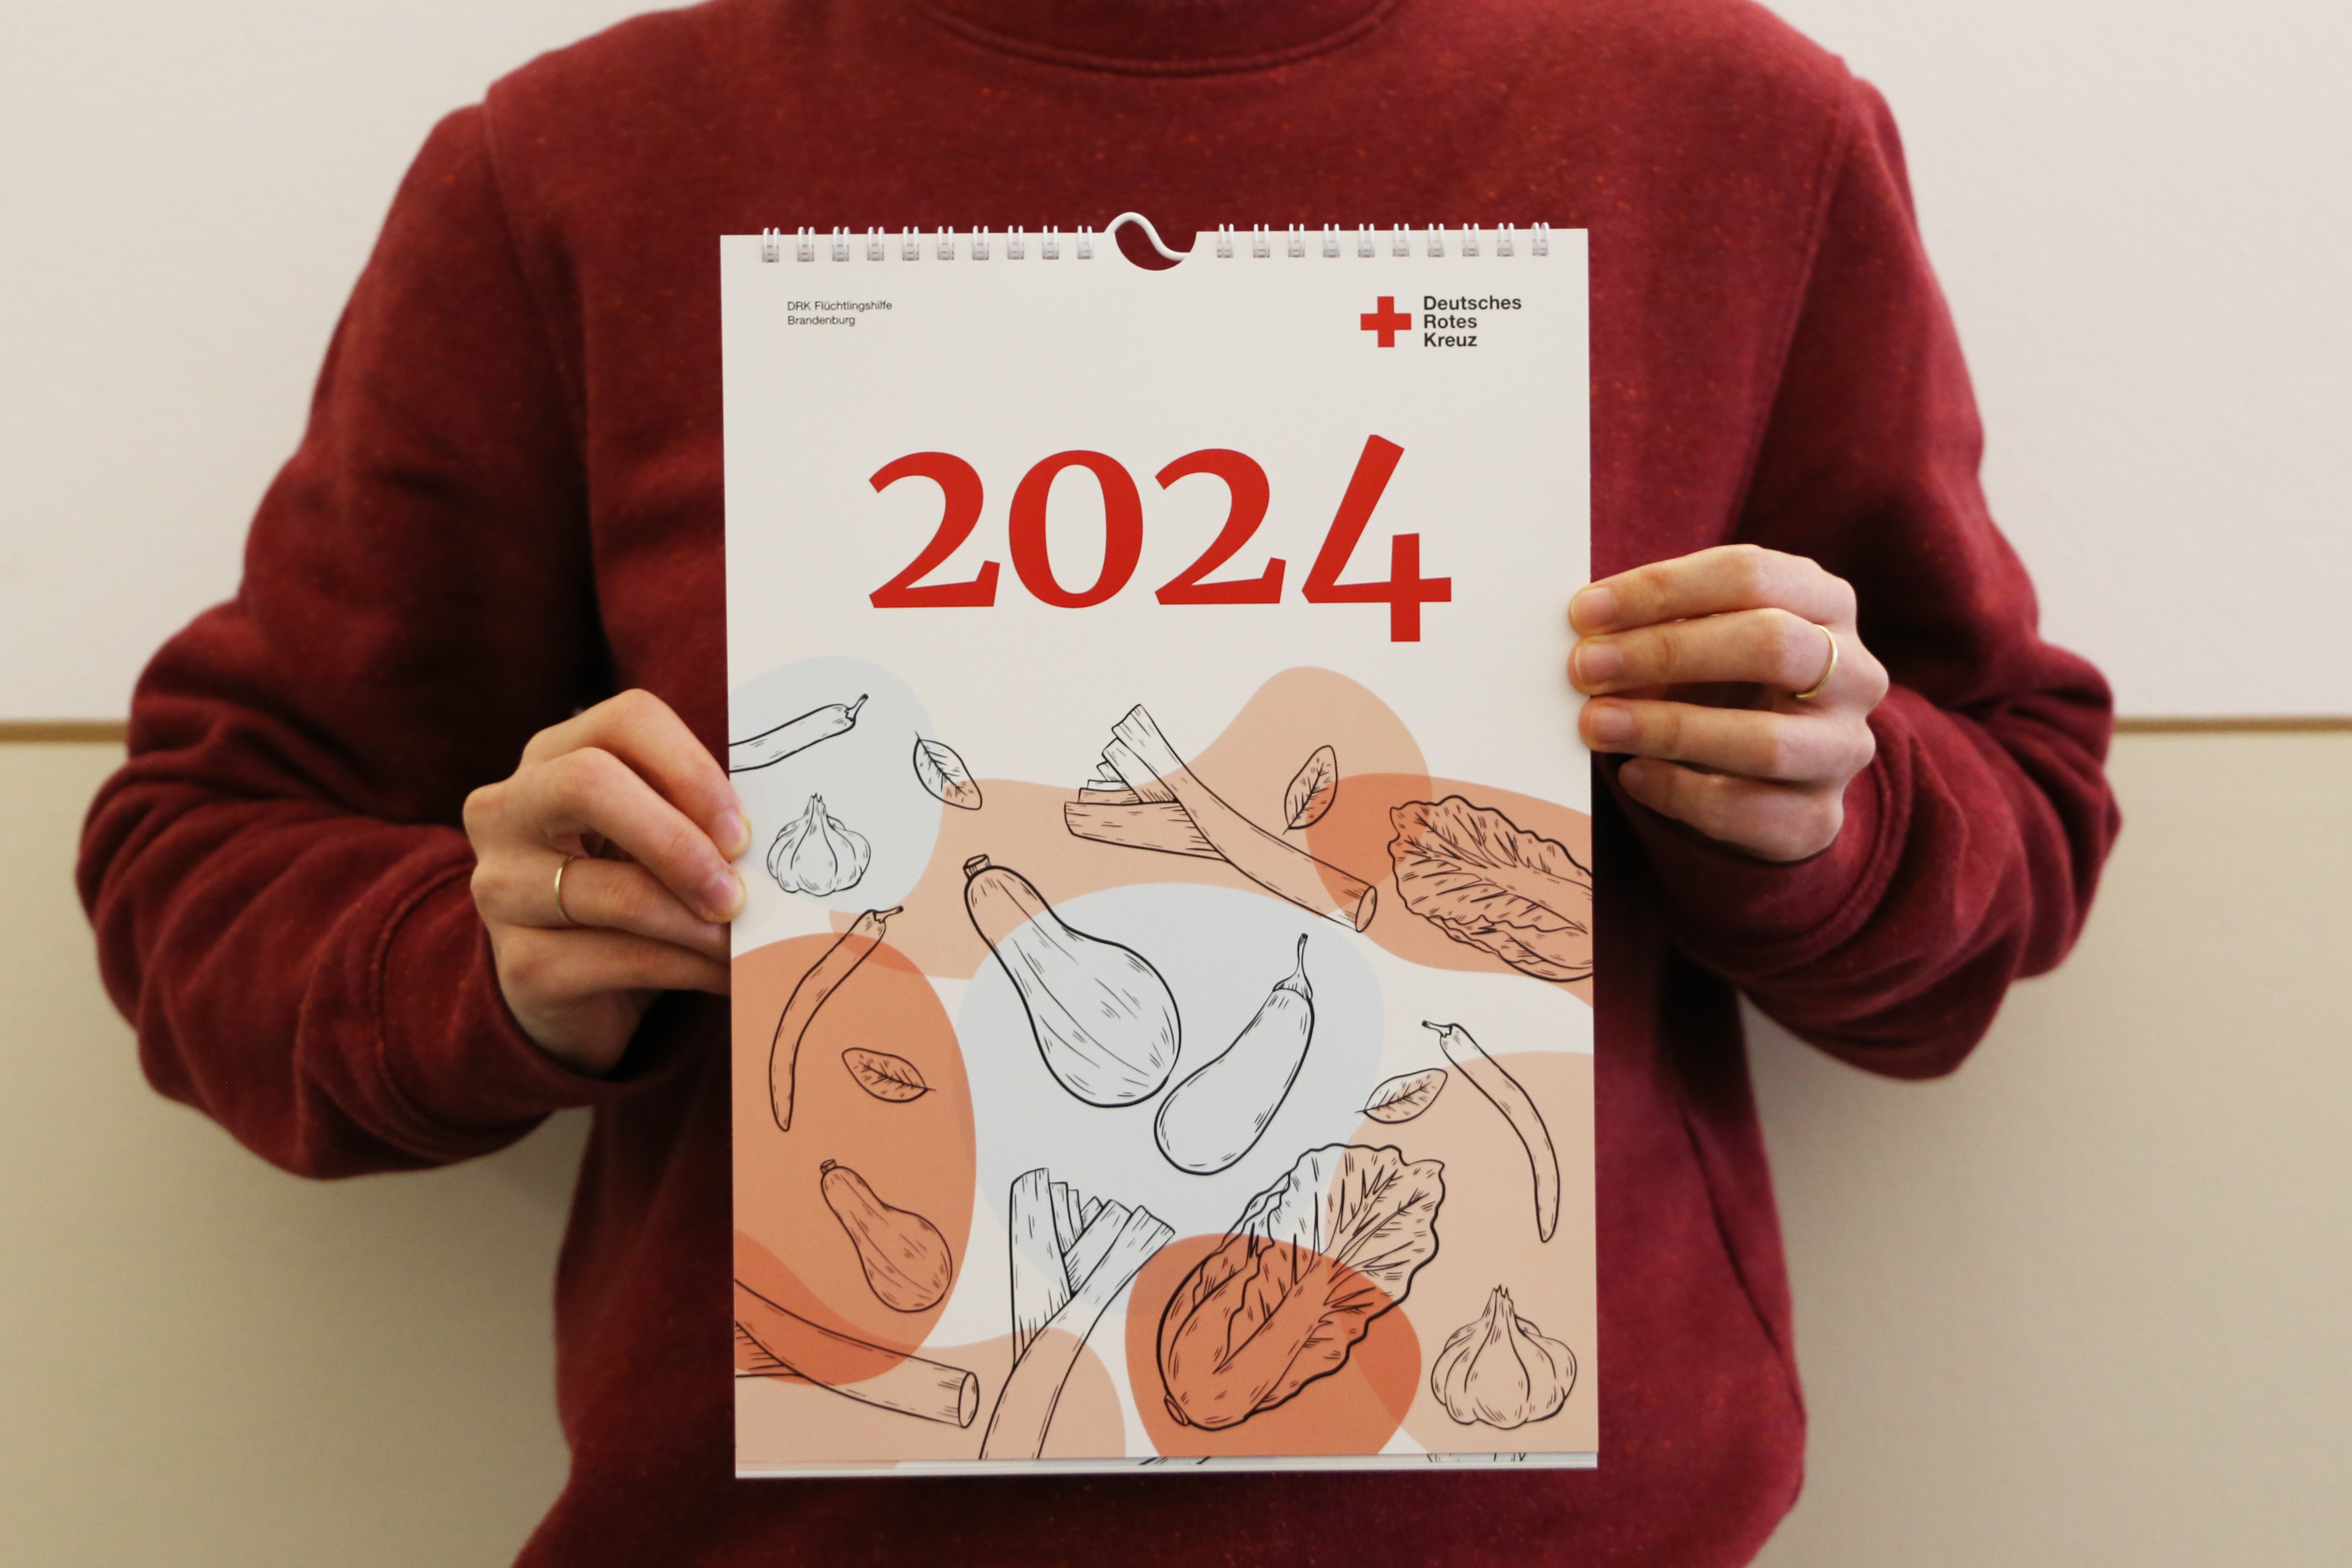 Eine Person hält einen Wandkalender für das Jahr 2024 in die Kamera